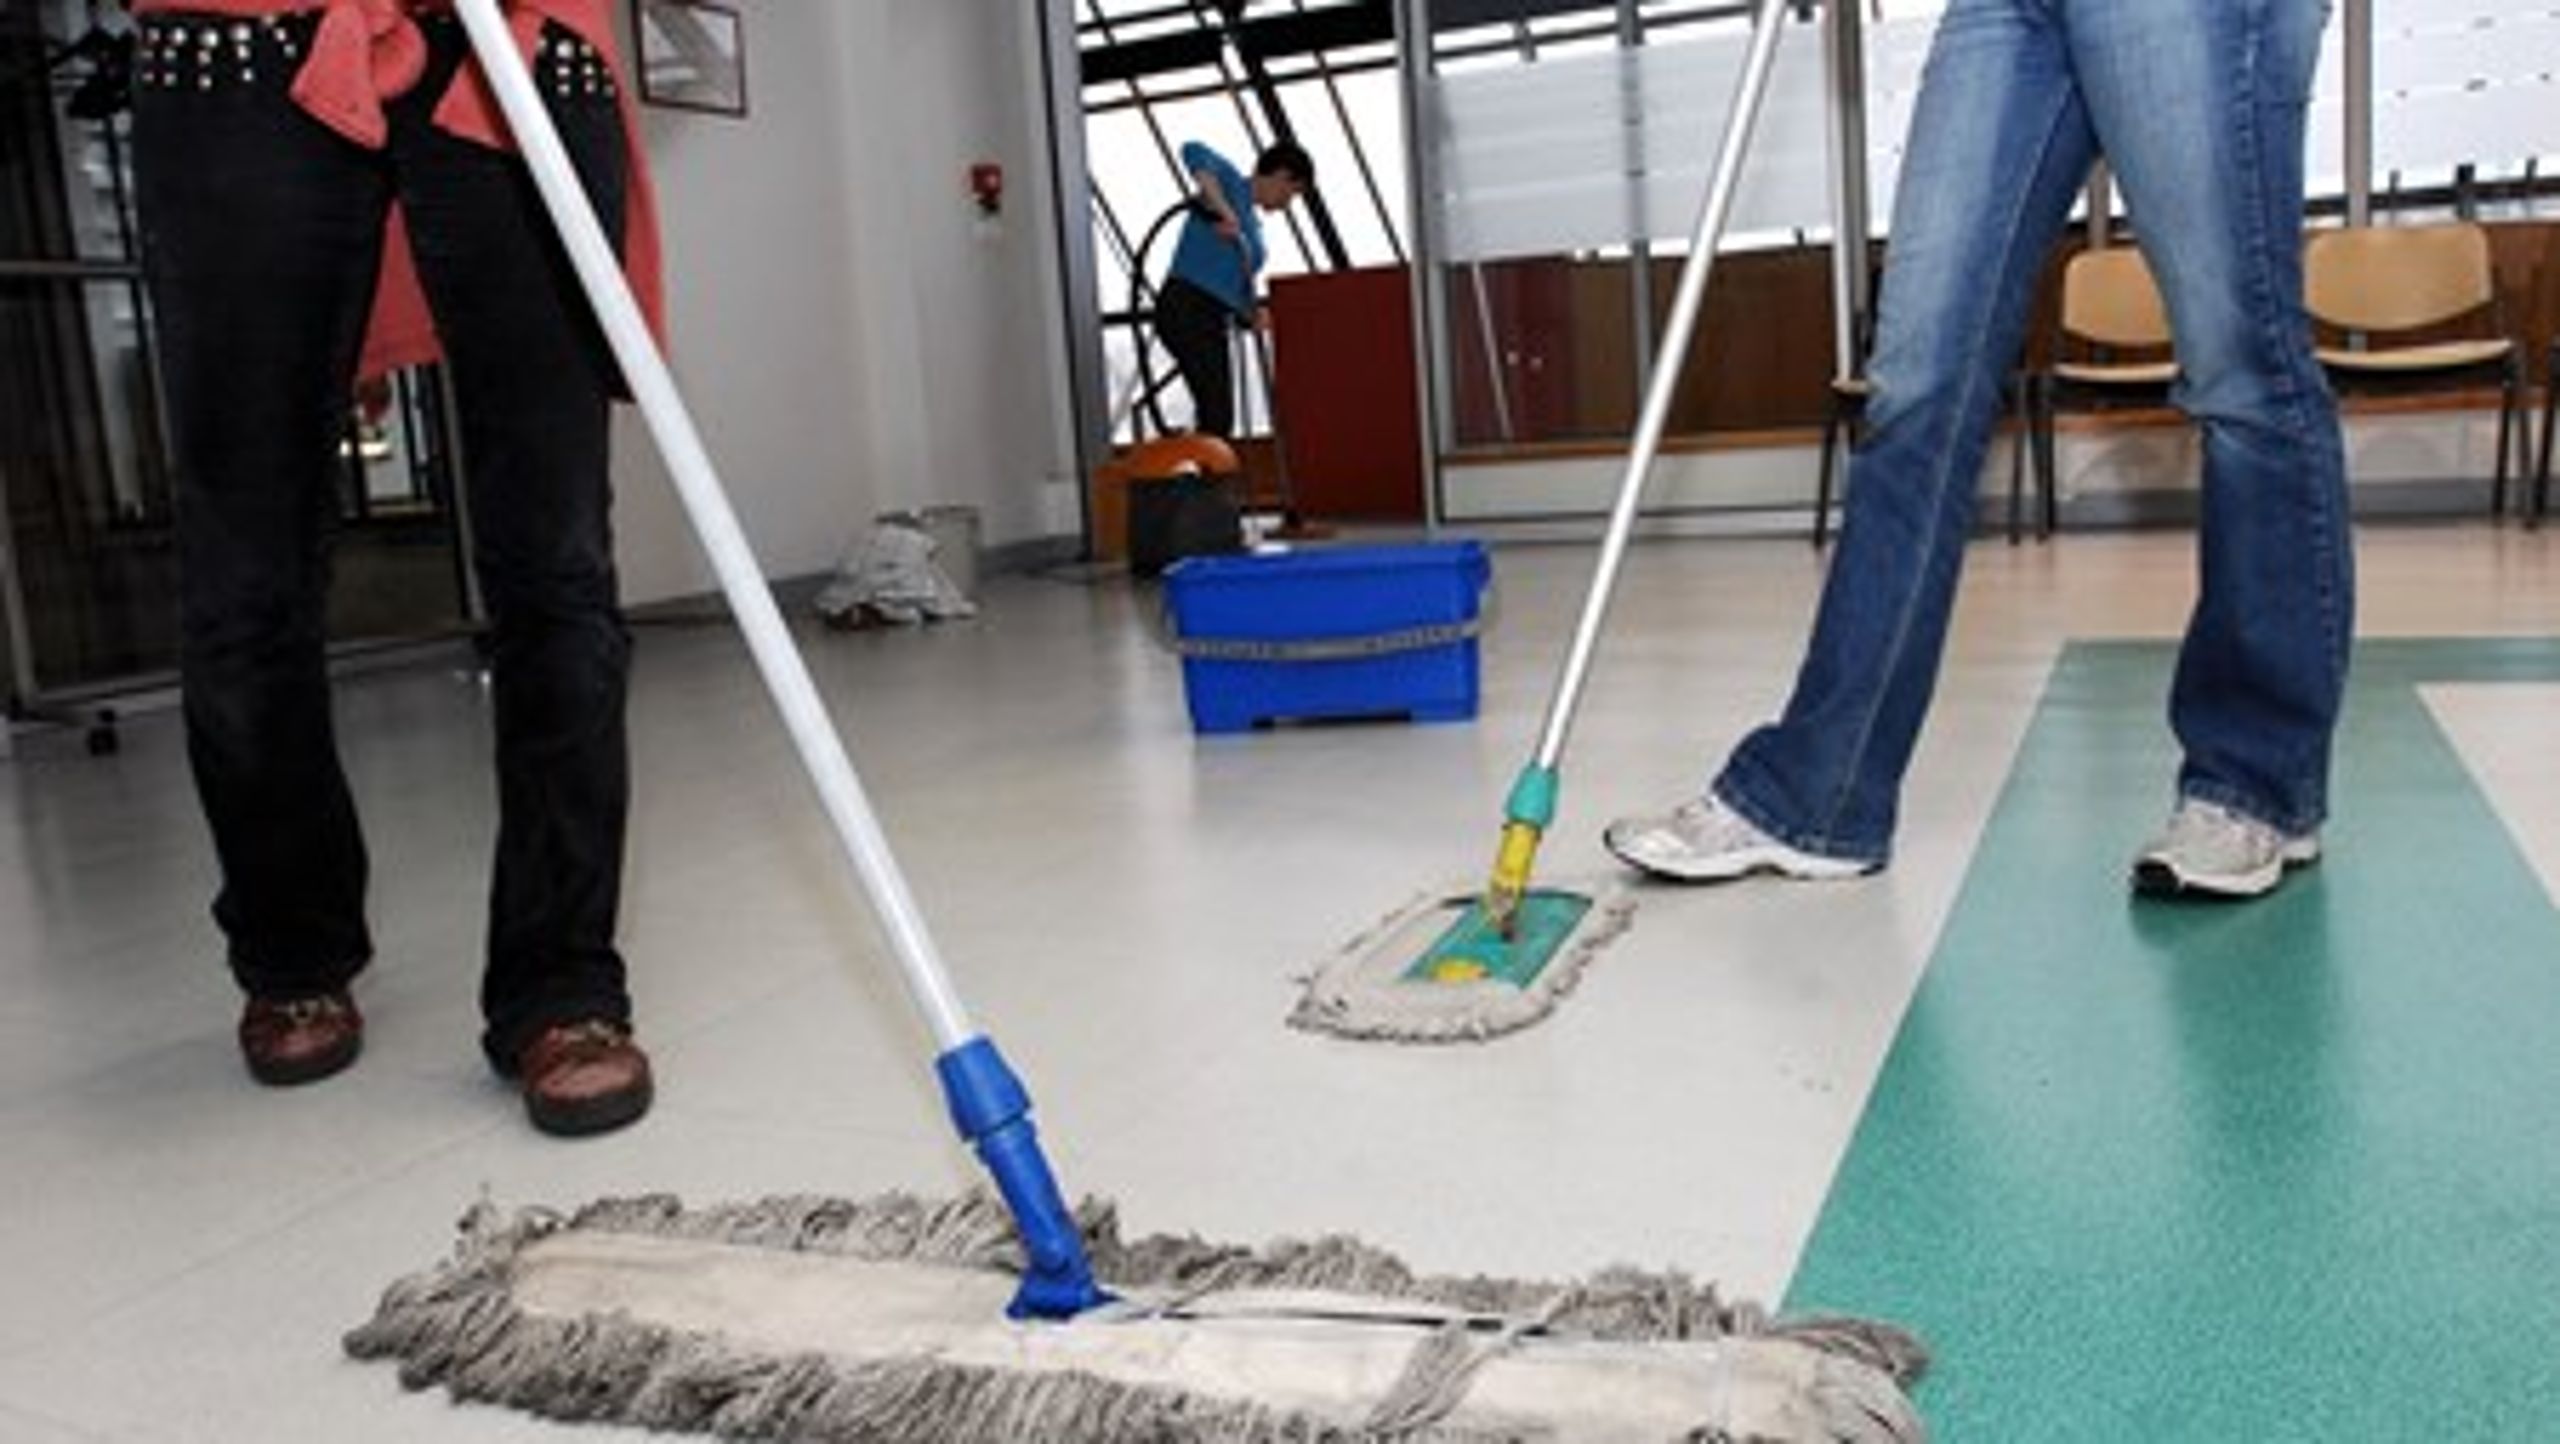 Virksomheder, der eksempelvis tilbyder rengøring, har stigende problemer med at finde arbejdskraft, advarer fra Dansk Industri.